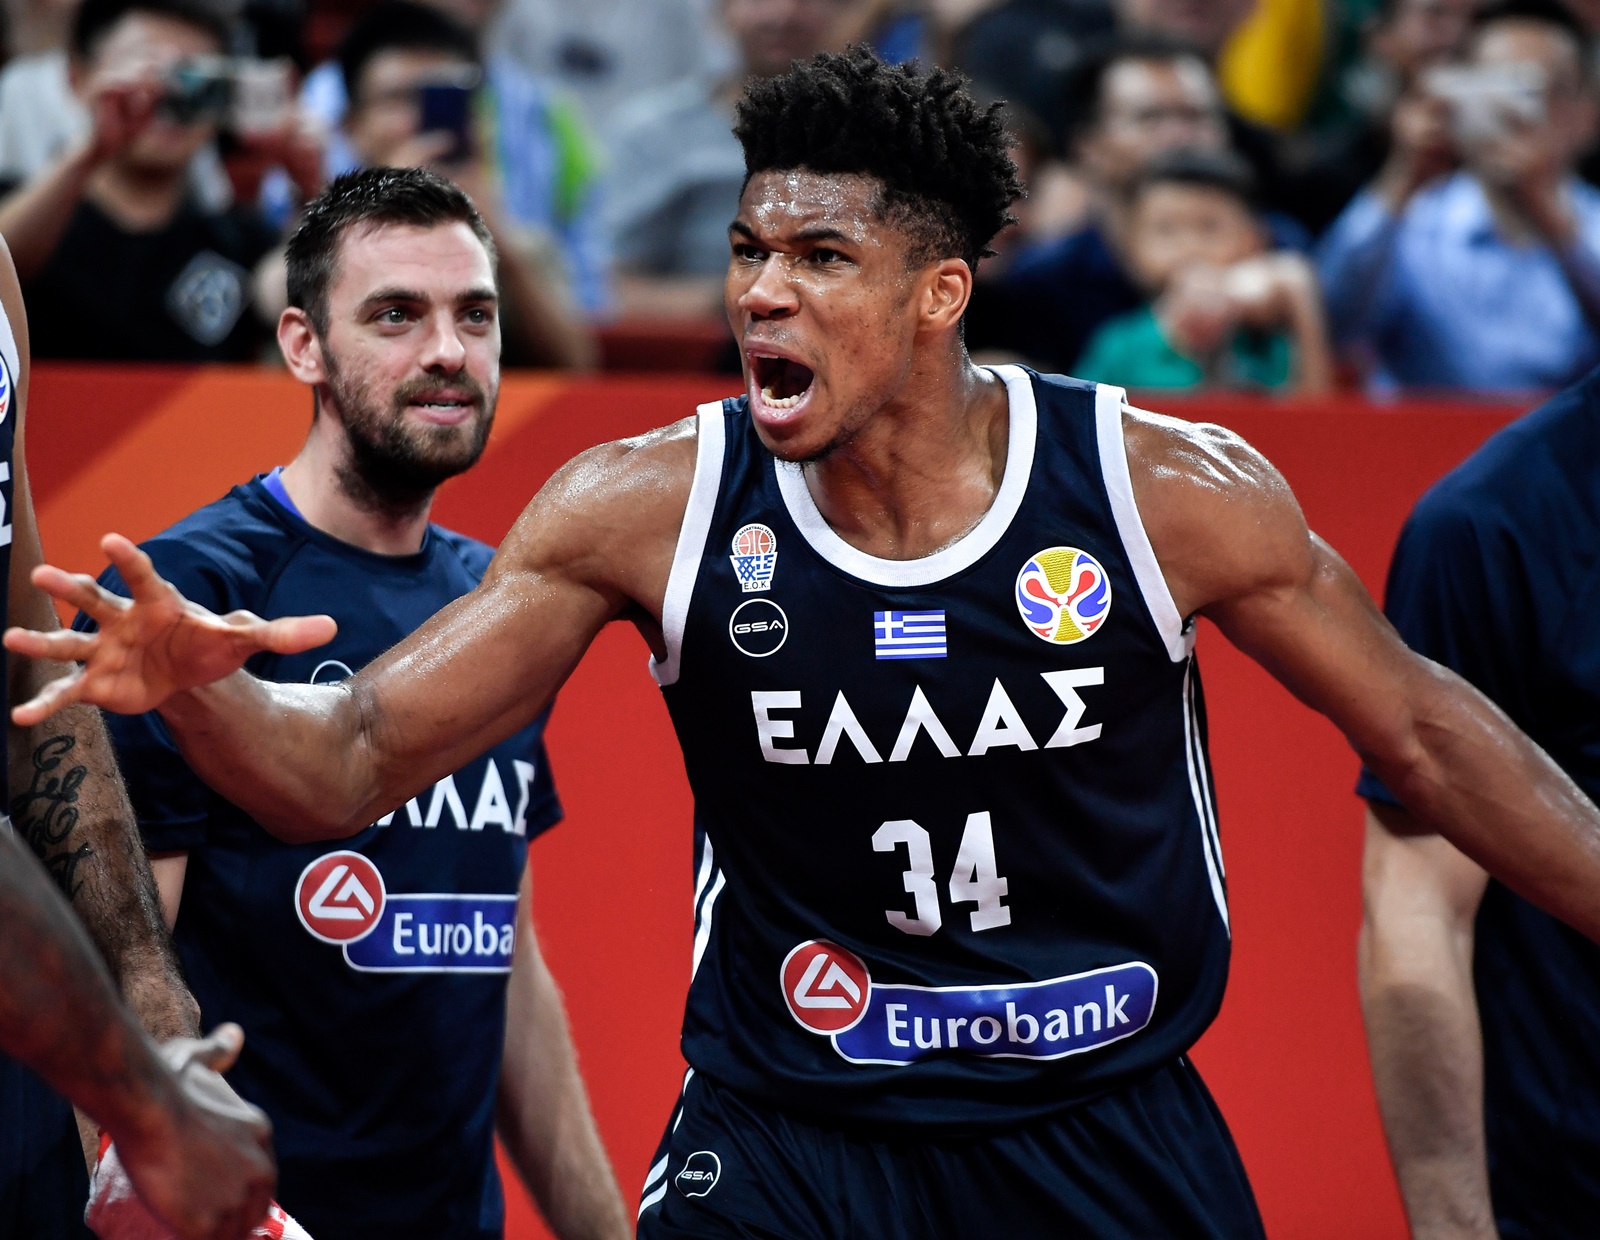 Eθνική μπάσκετ eurobasket 2022: Άπαντες παρόντες για τον μεγάλο στόχο